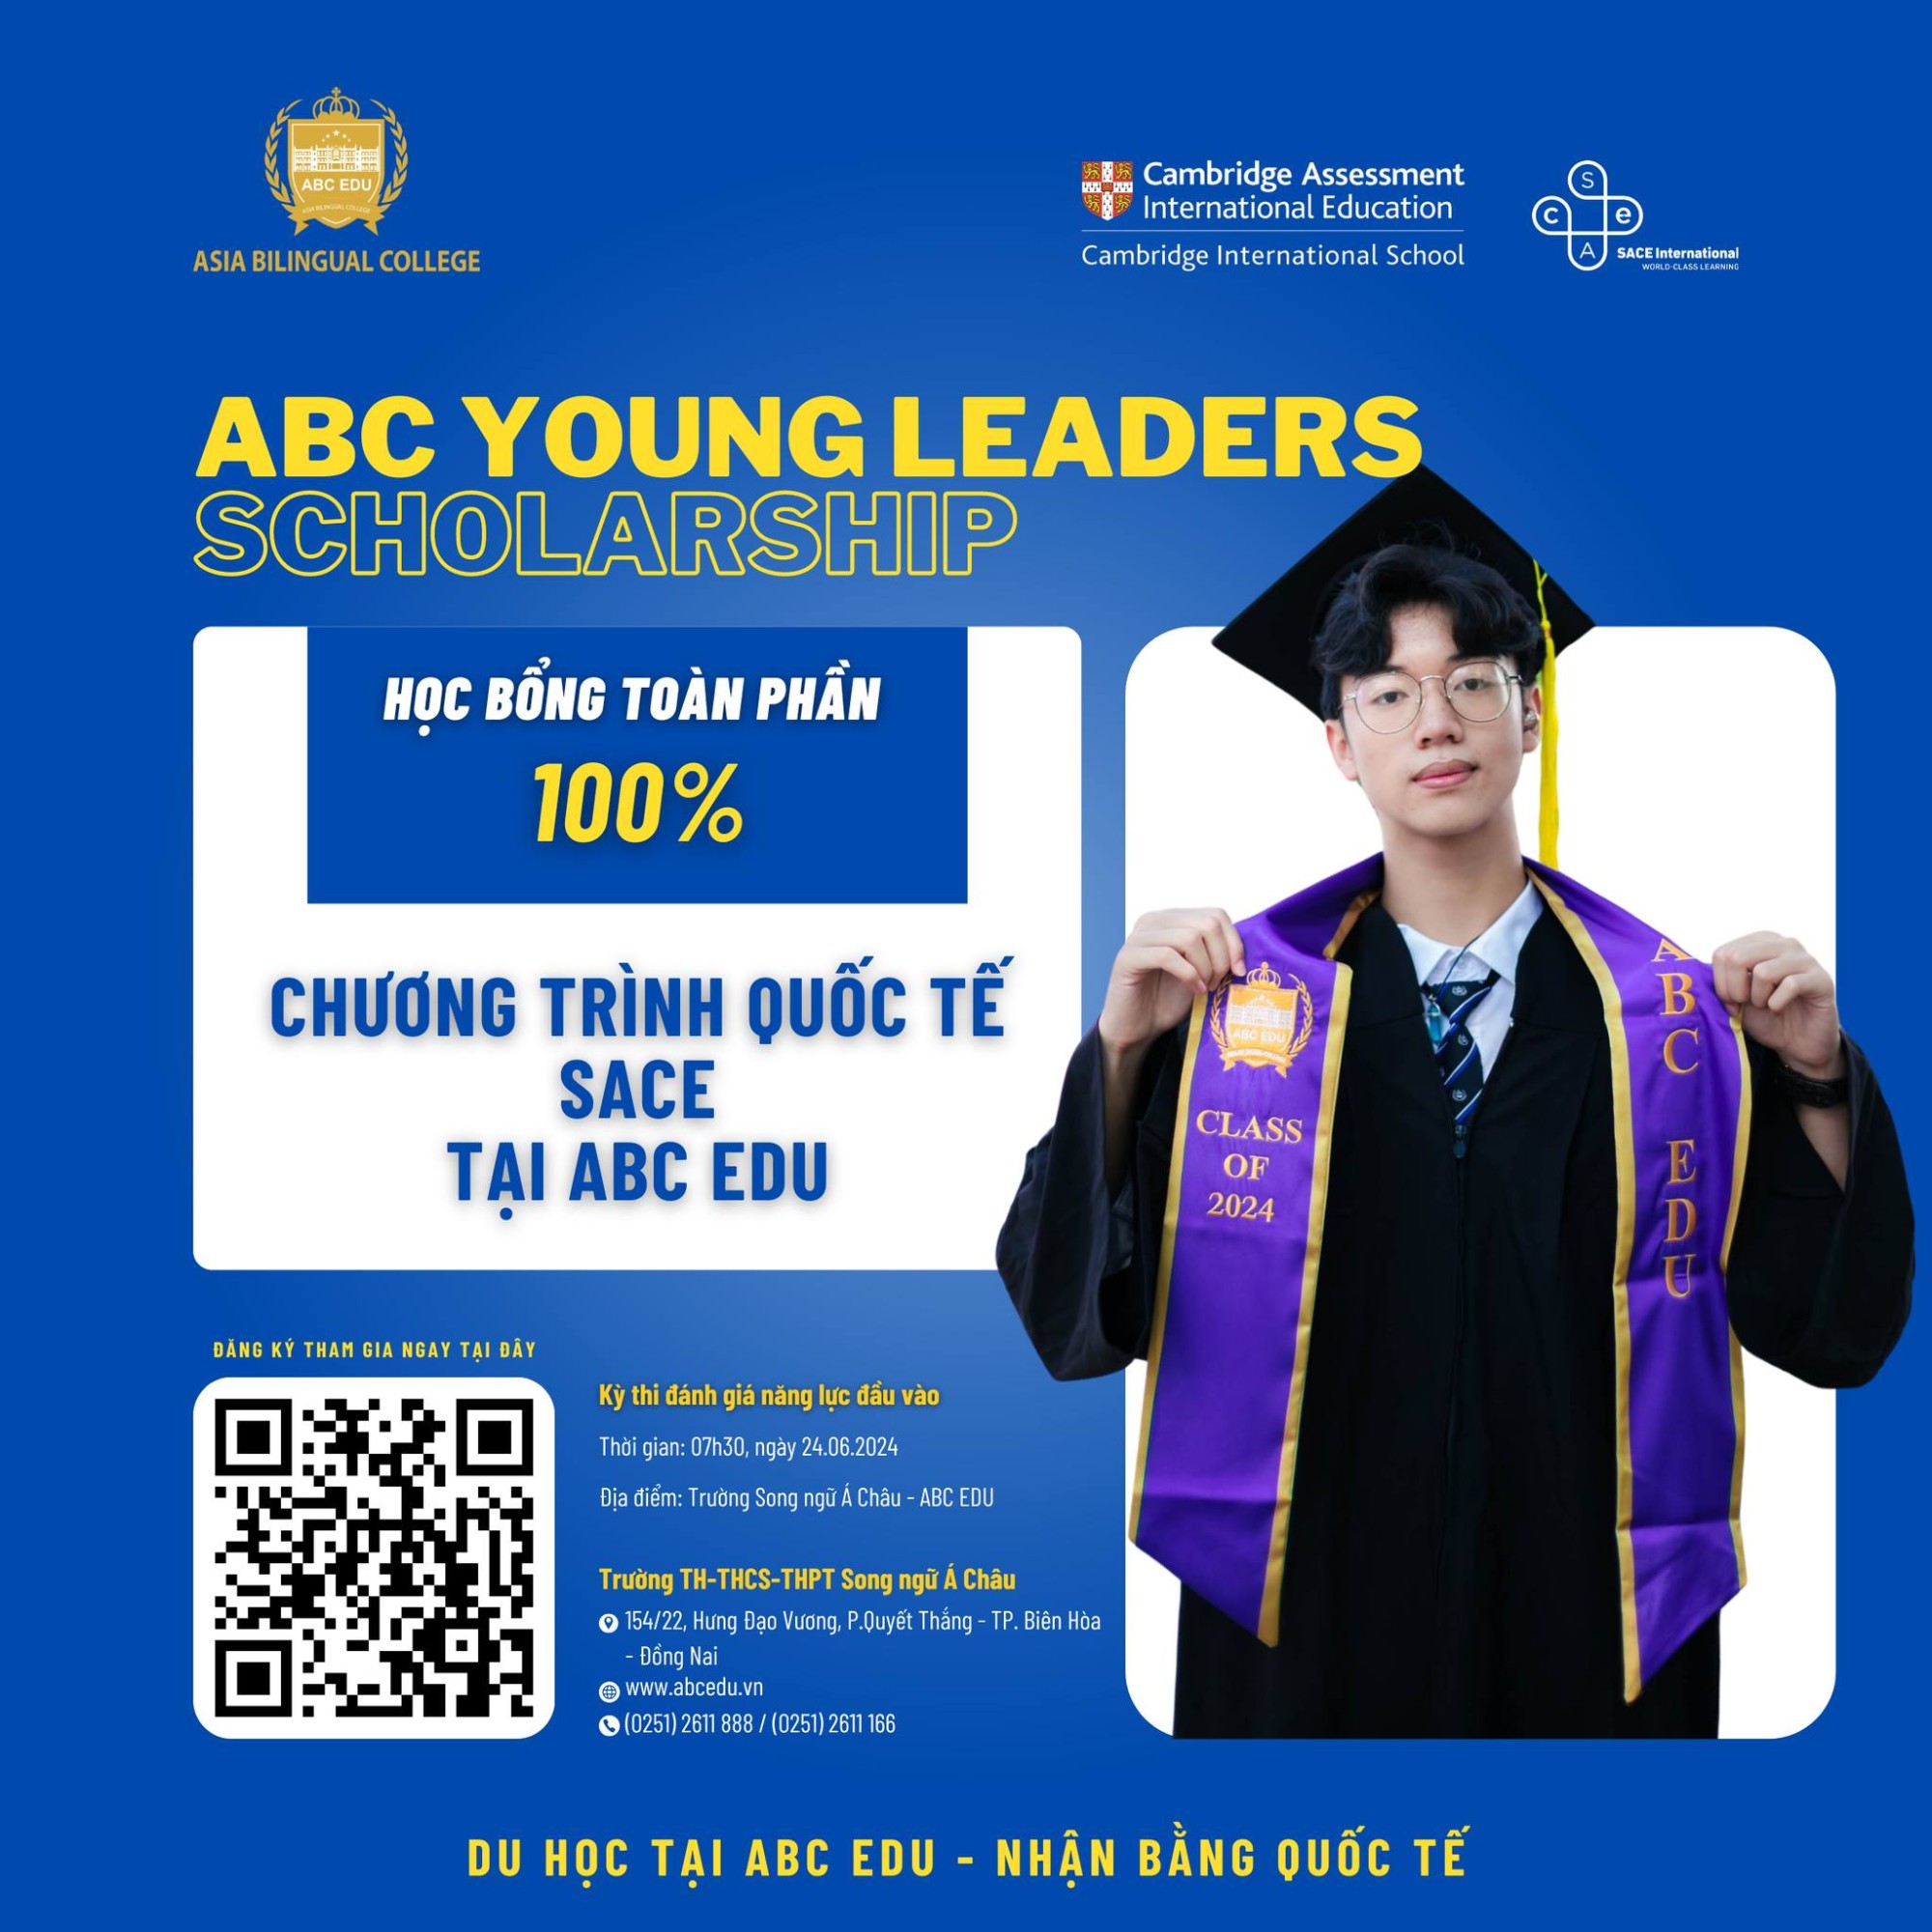 SĂN HỌC BỔNG TOÀN PHẦN  “ABC Young Leaders Scholarship” - CHƯƠNG TRÌNH QUỐC TẾ SACE